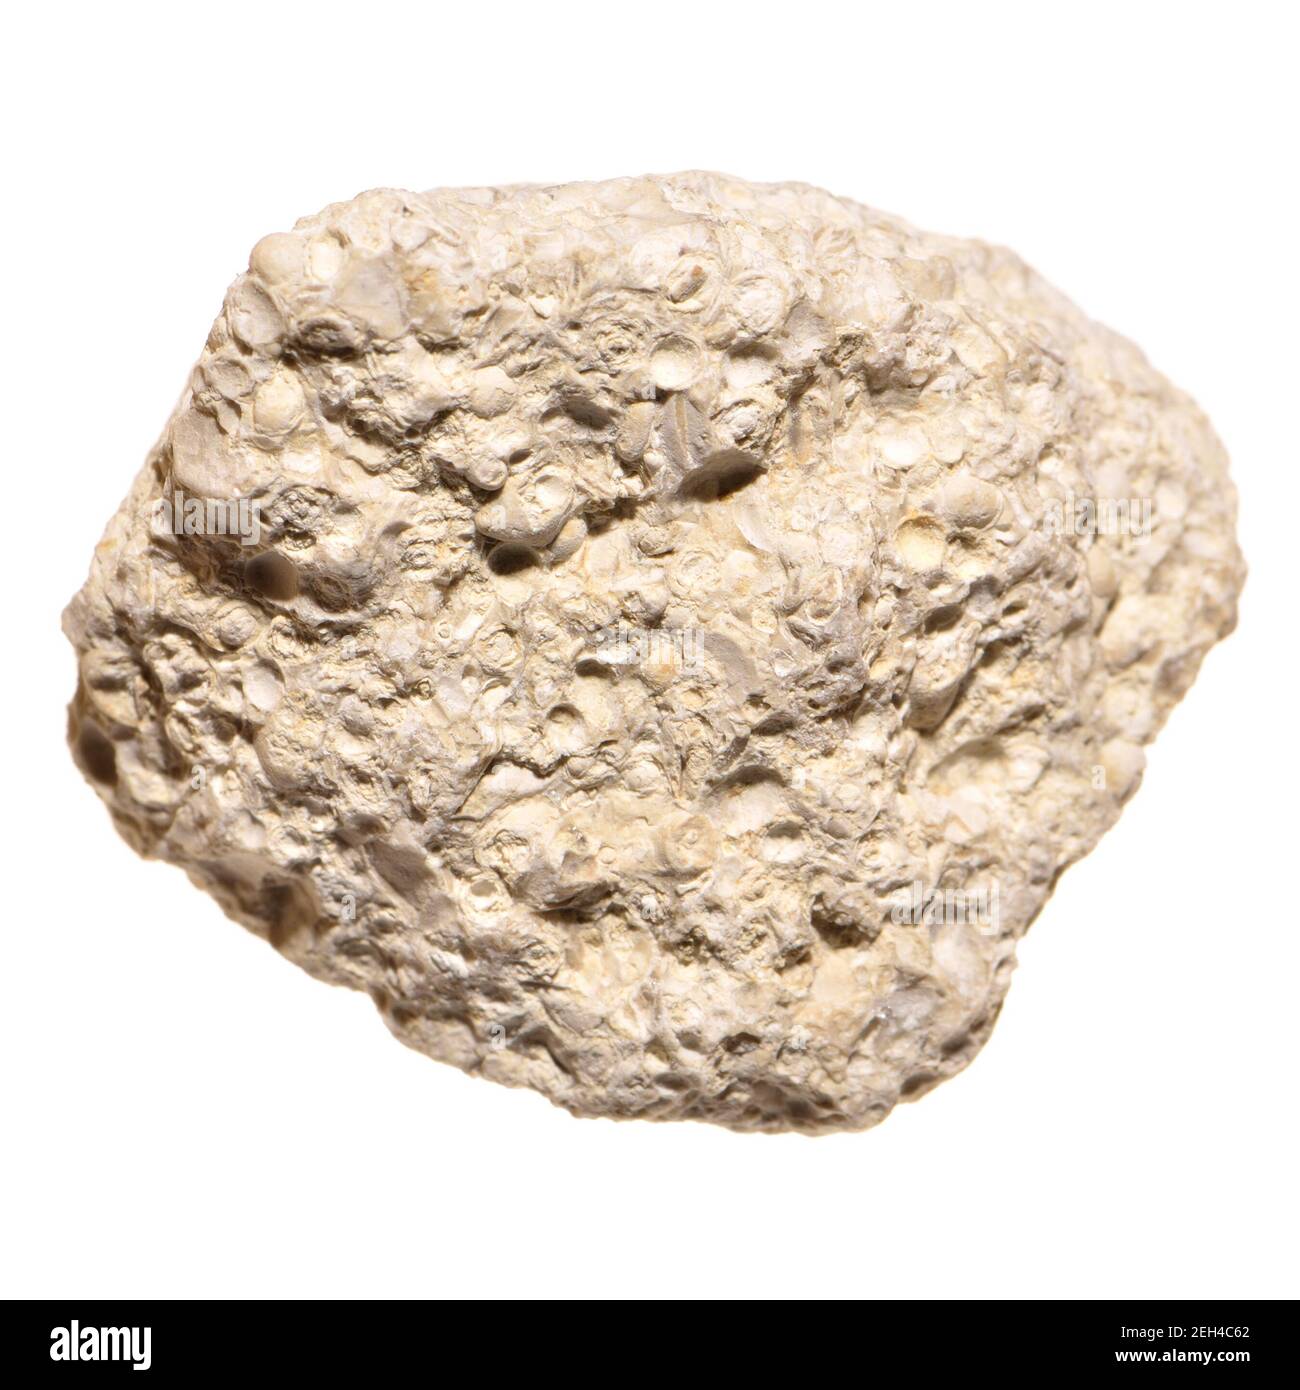 White Granite (UK) Rock igneux contenant de la silice et du quartz. Gros plan d'un petit échantillon Banque D'Images